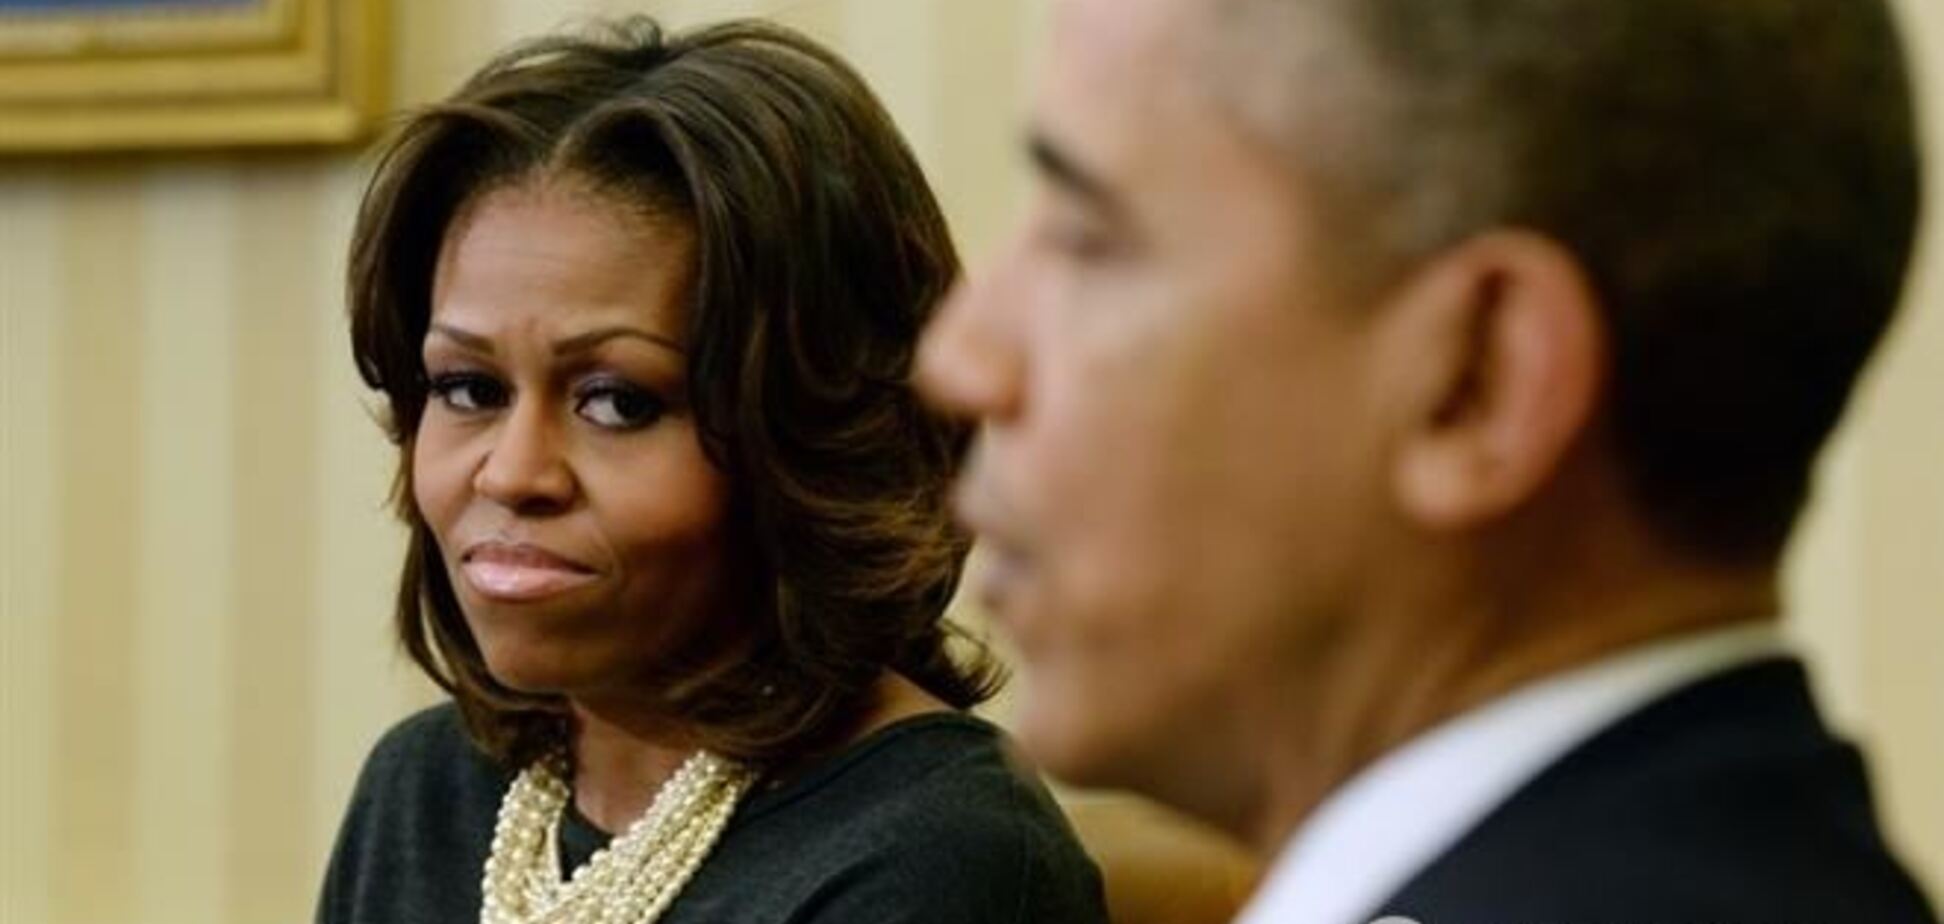 СМИ заговорили о готовящемся разводе Барака и Мишель Обамы